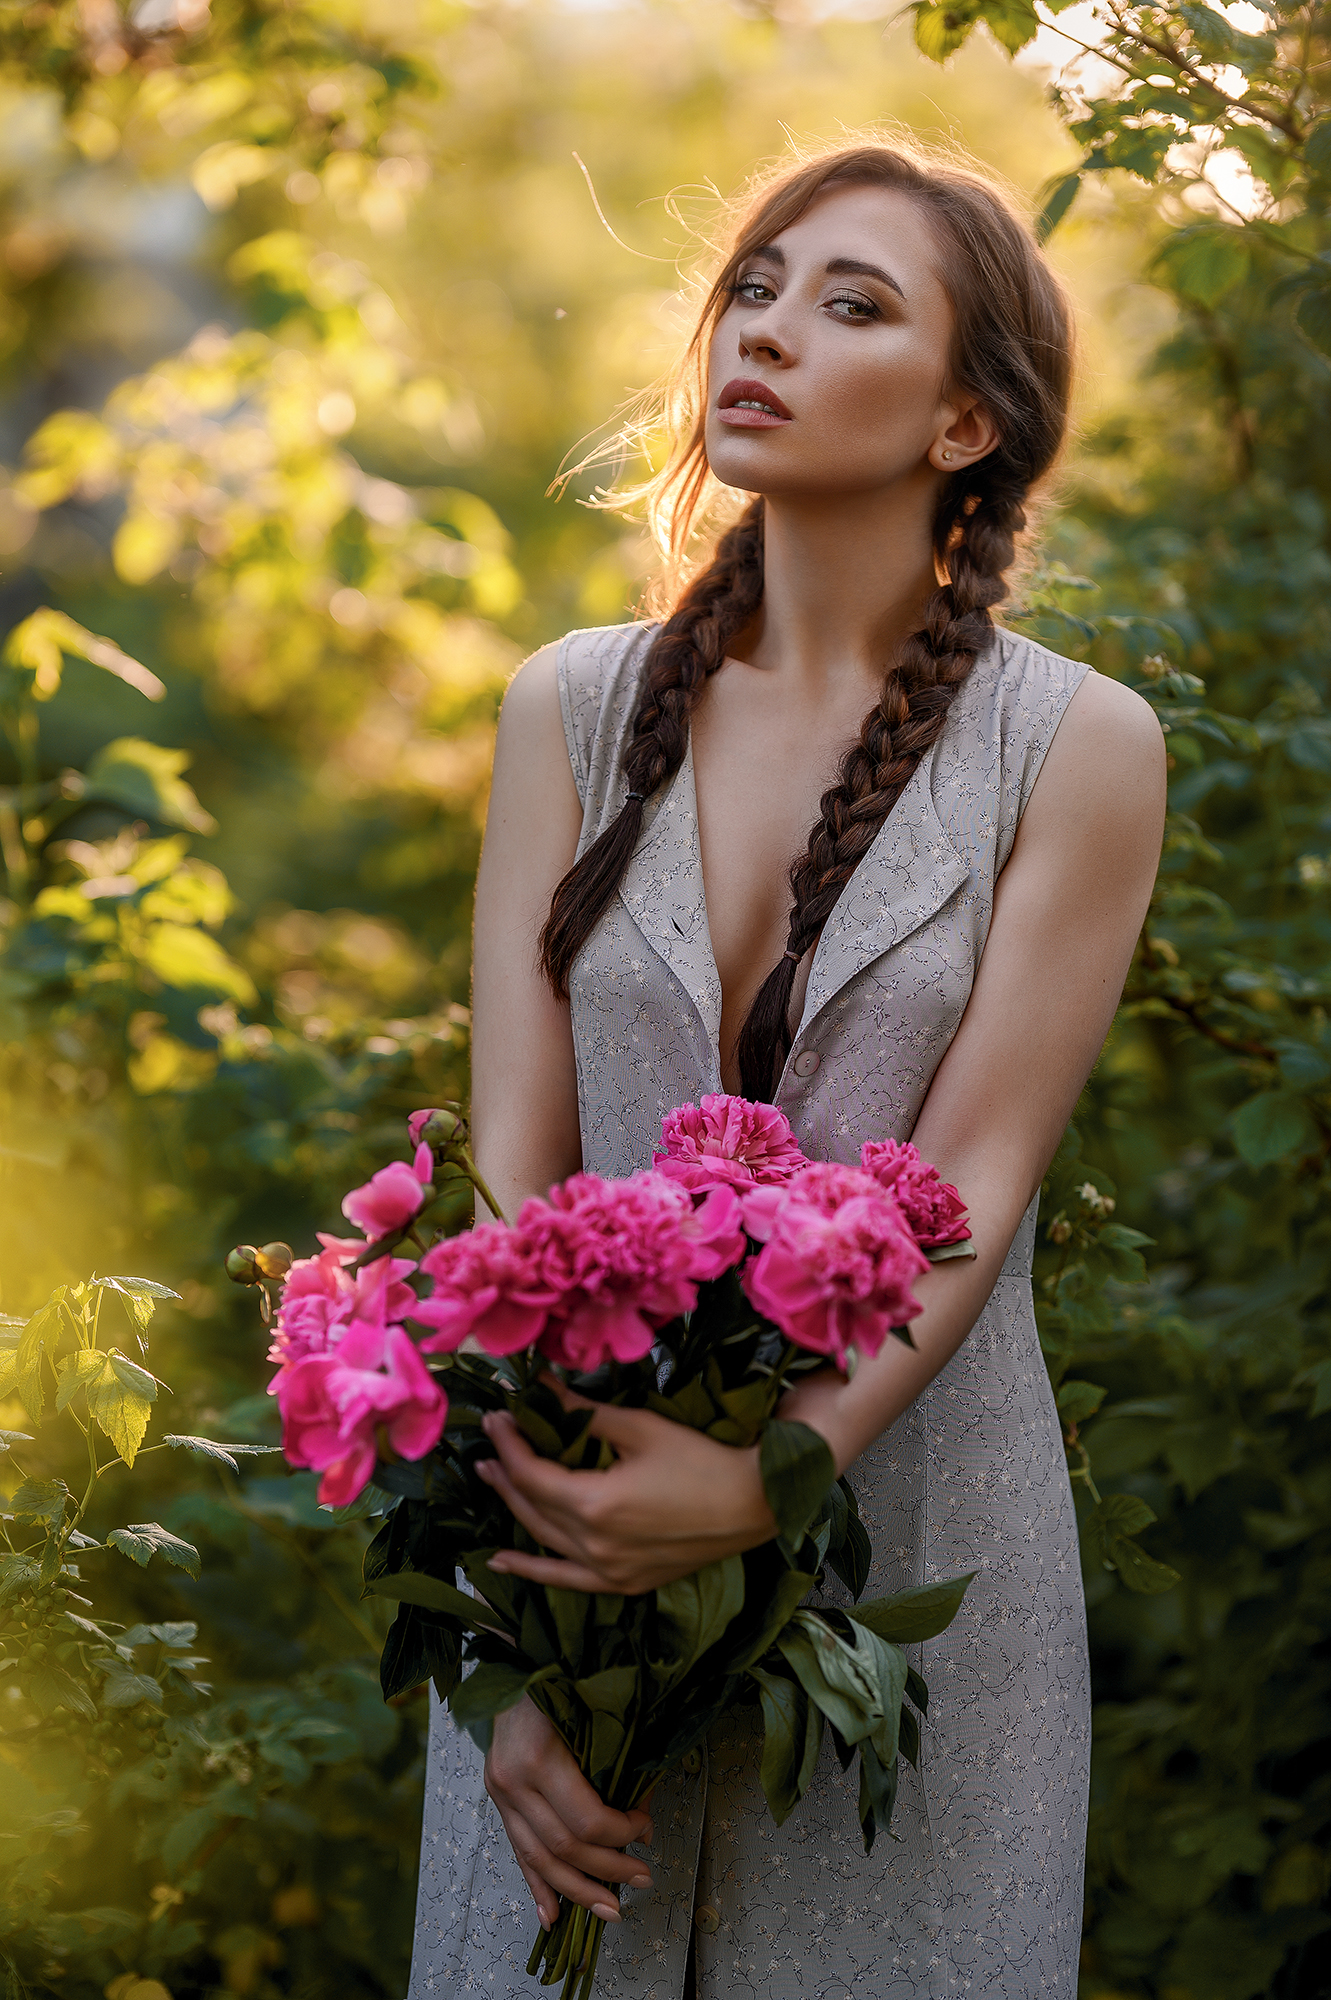 Elena Zharkova Women Brunette Long Hair Twintails Braids Flowers Pink Flowers Dress Makeup Looking A 1331x2000